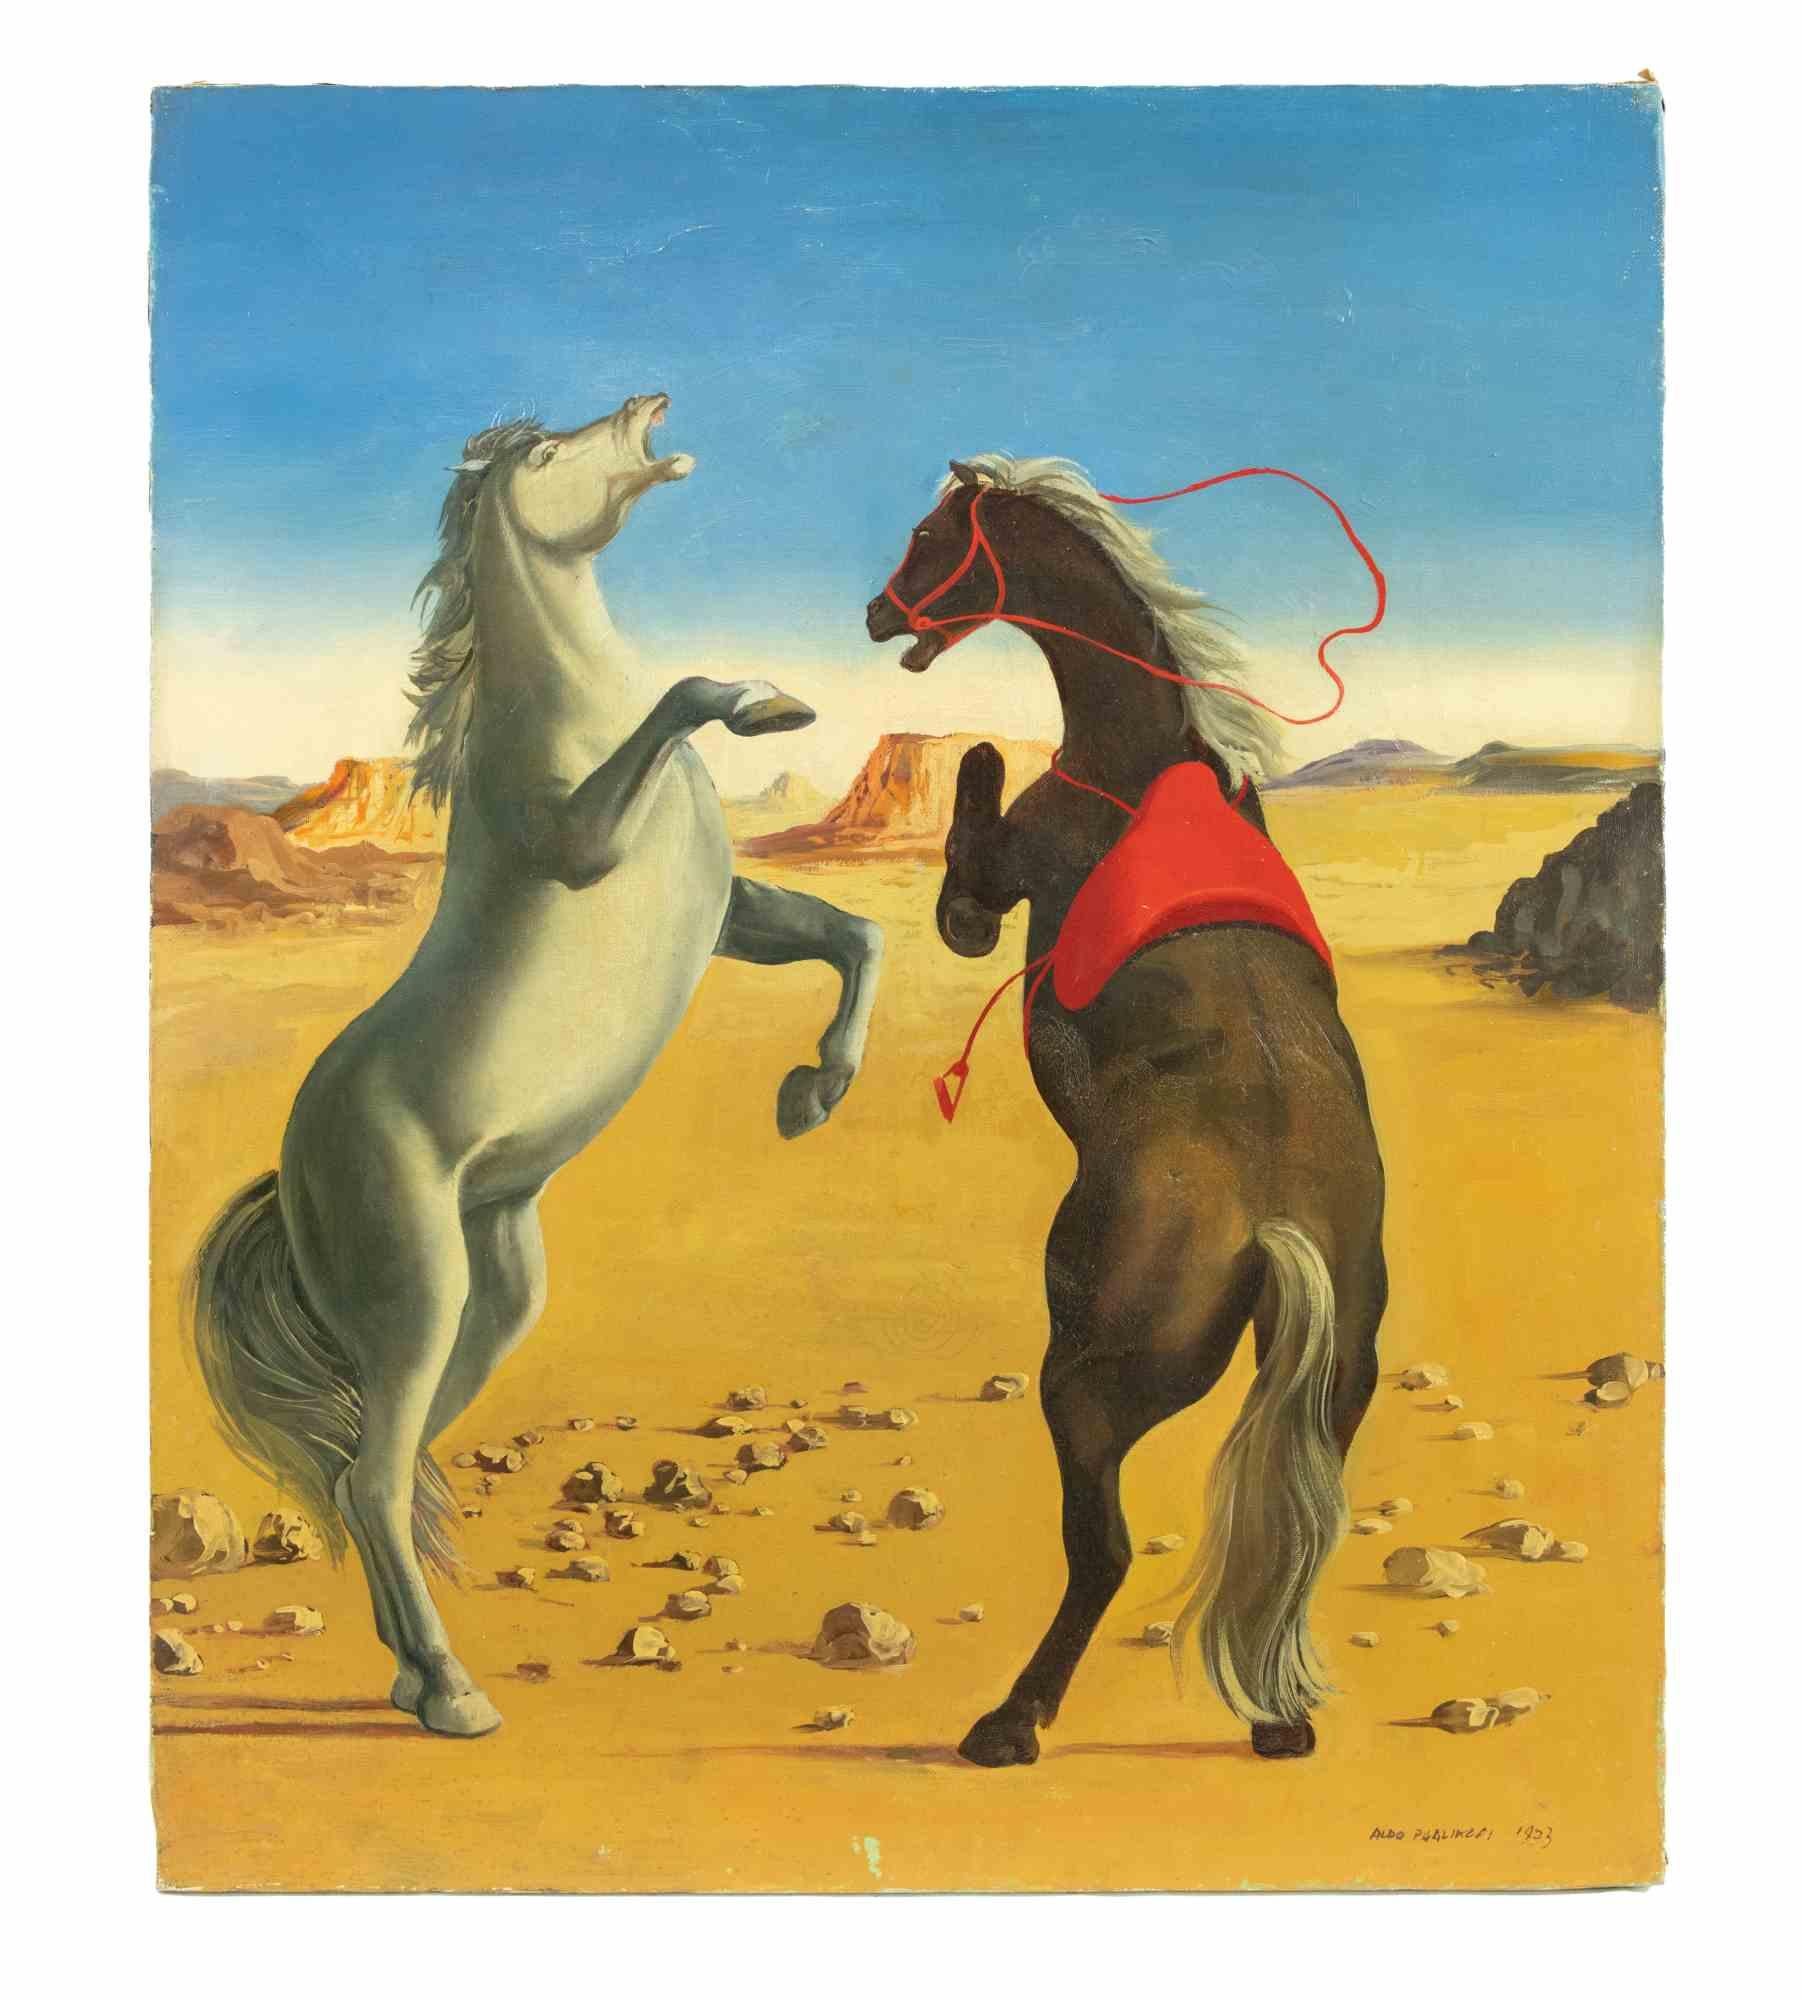 Bizarre Horses ist ein originales zeitgenössisches Kunstwerk von Aldo Pagliacci aus dem Jahr 1973.

Gemischtes farbiges Öl auf Leinwand.

Handsigniert und datiert am unteren rechten Rand.

Auf der Rückseite betitelt und signiert.